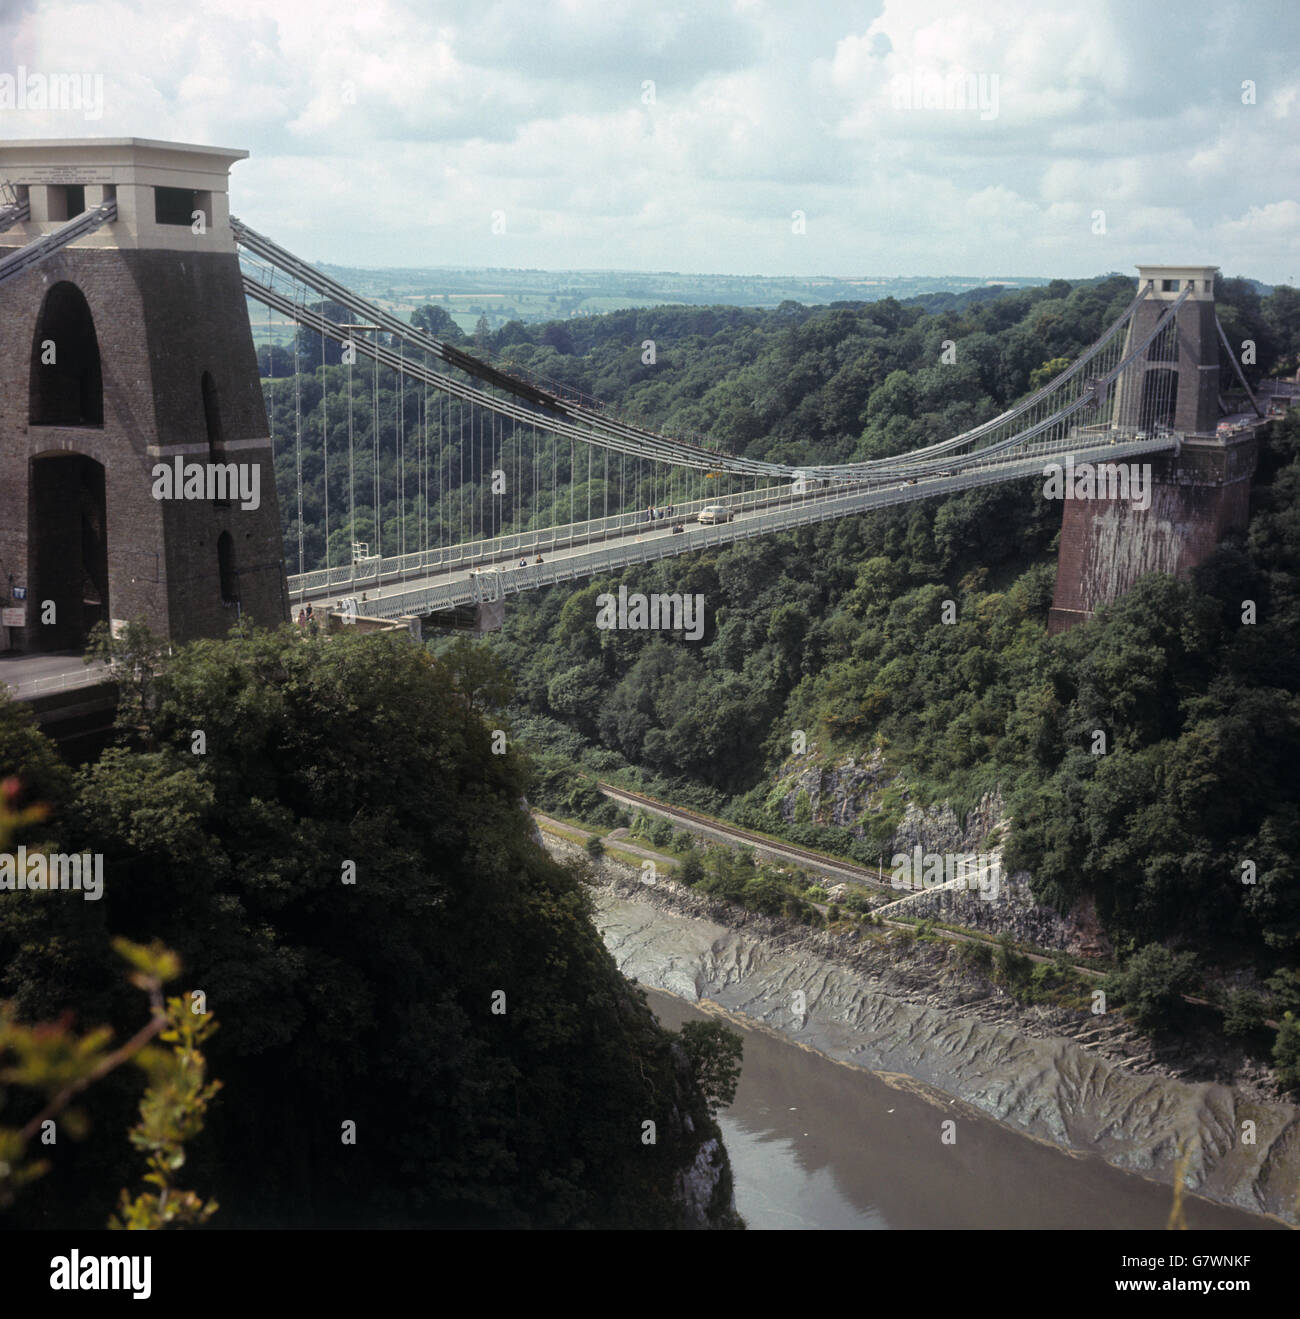 Edifici e monumenti - Clifton Suspension Bridge - Bristol. Immagine del ponte sospeso Clifton alto 245 piedi sopra la Gola di Avon vicino a Bristol. Foto Stock